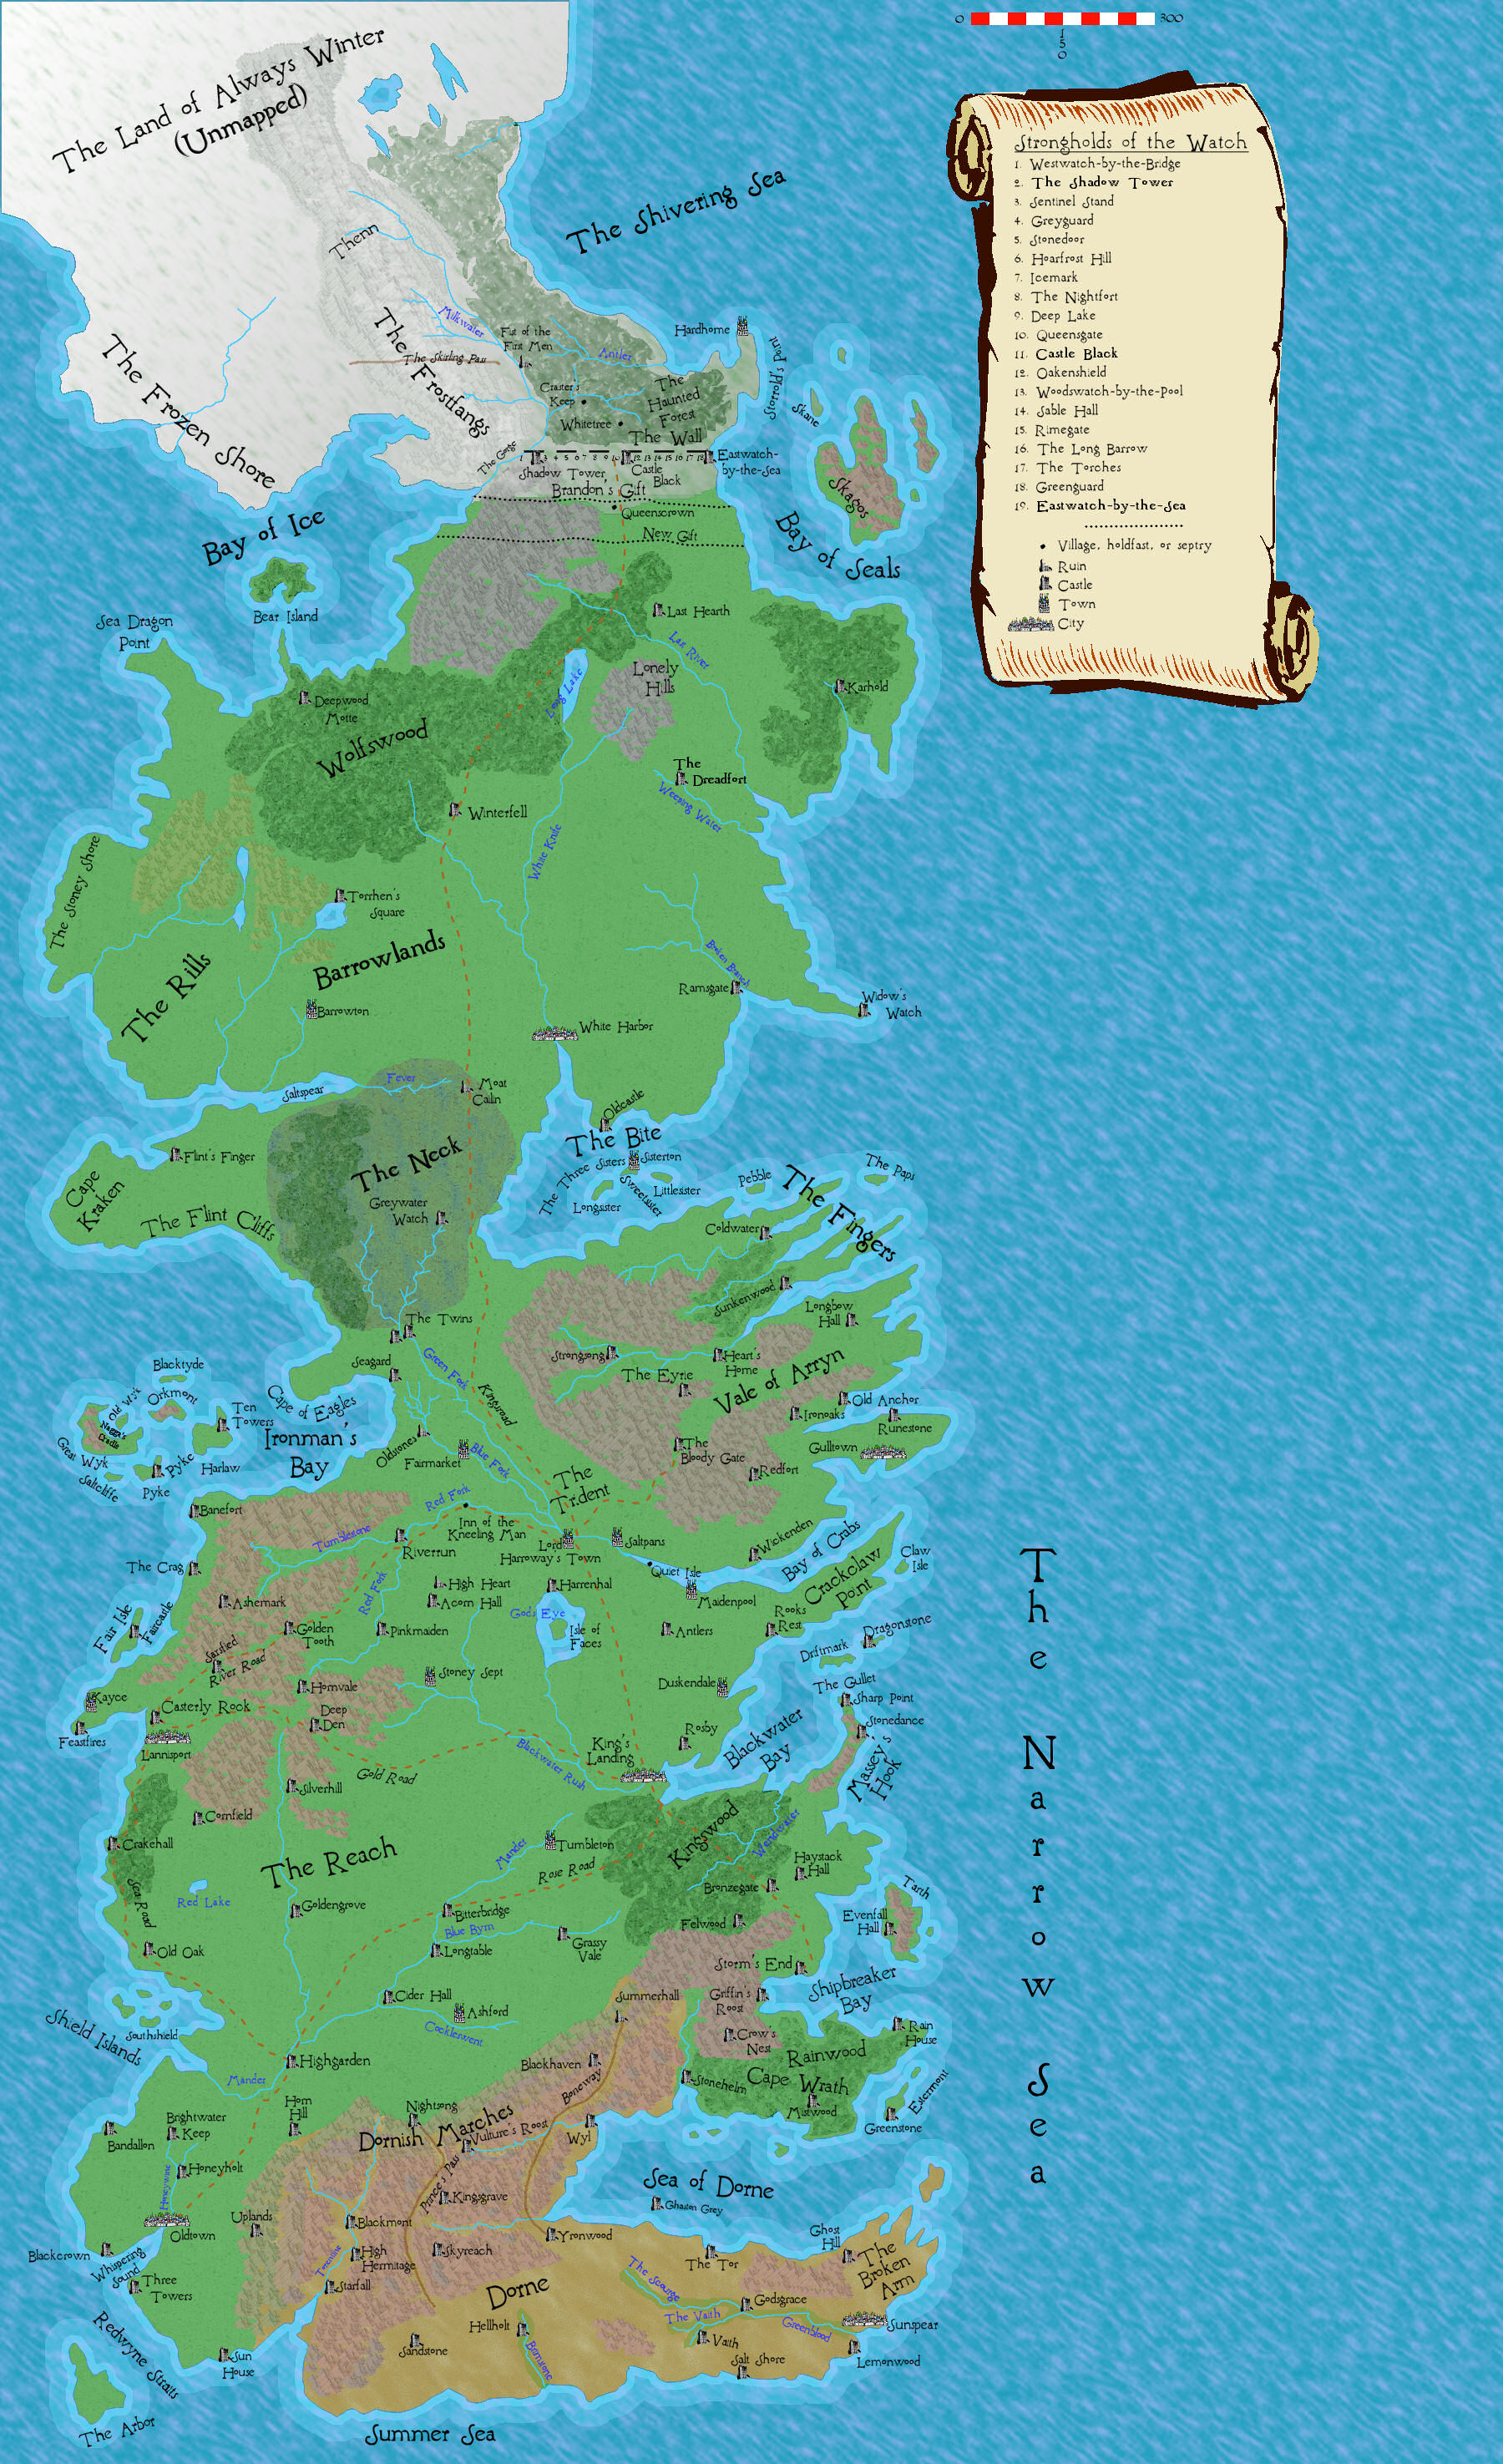 Westeros Map Wallpaper Wallpapersafari